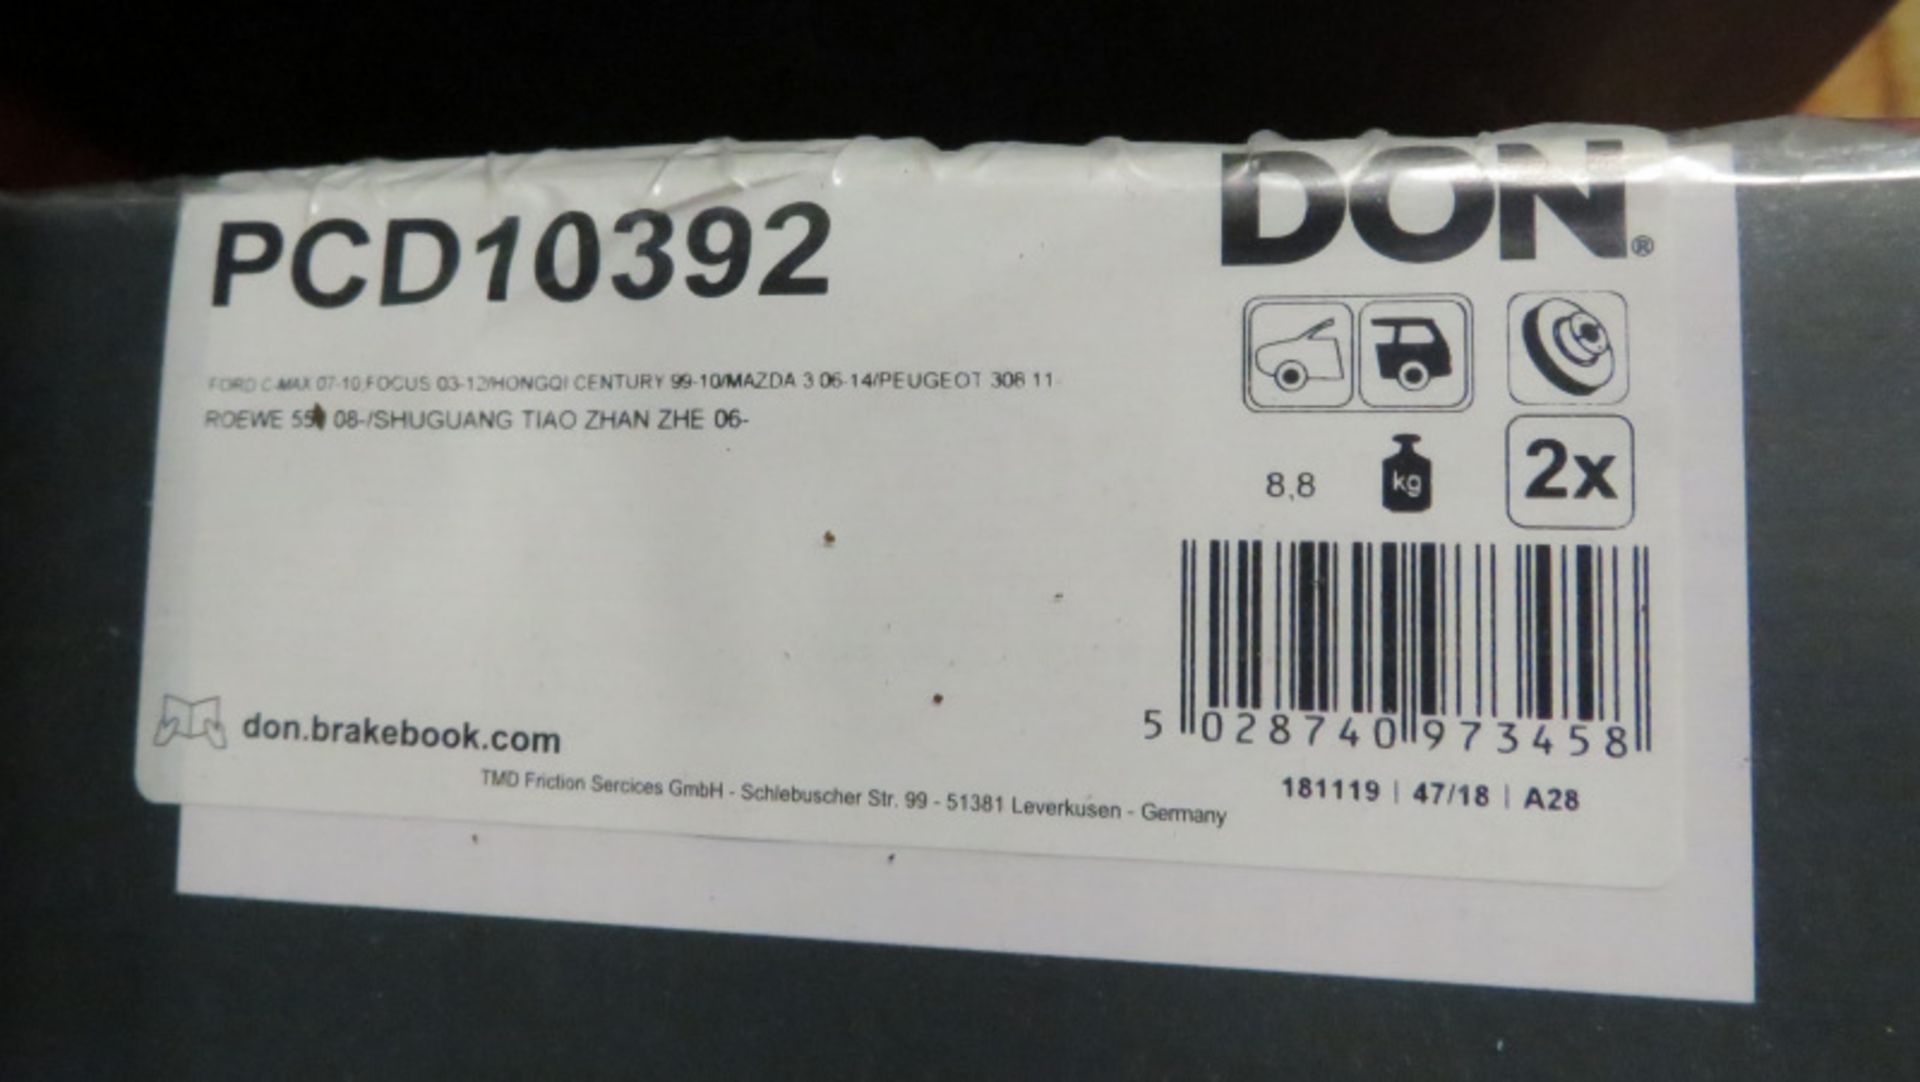 Don vehicle brake discs including models - DMD174, CD10272, PCD13442, DMD173, DMD263 - Image 3 of 5